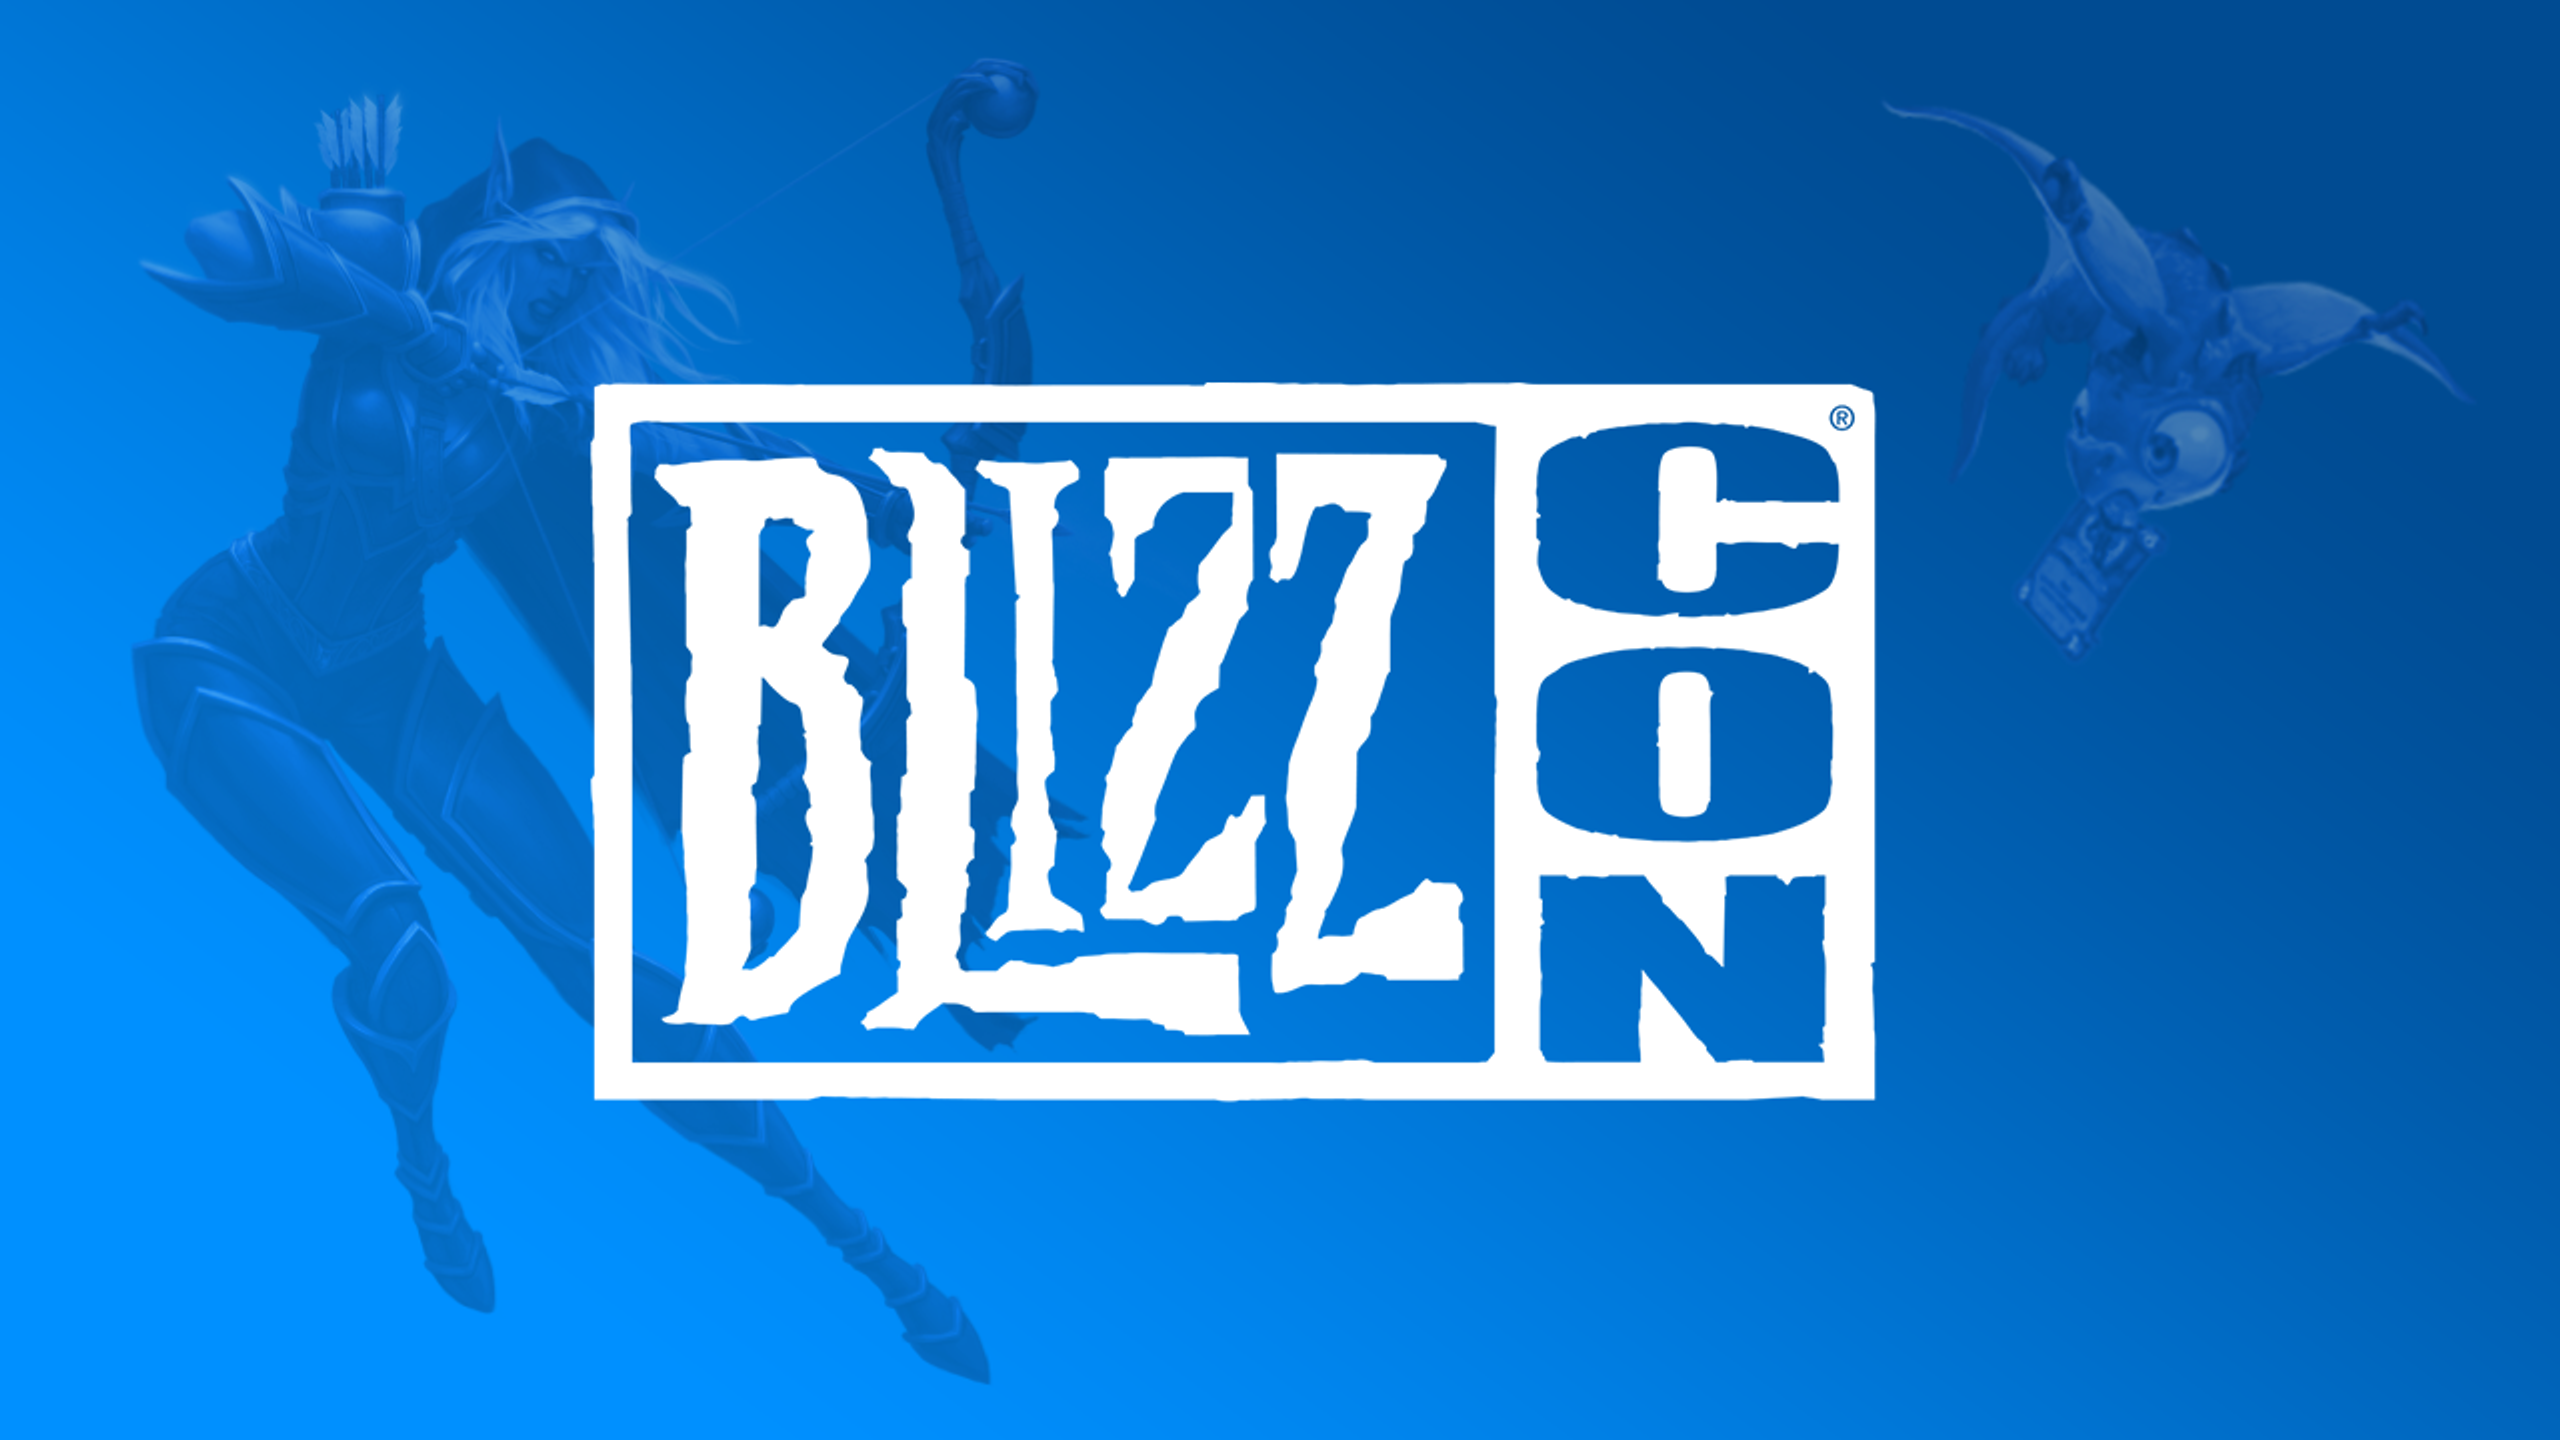 Quelles annonces pour Diablo à la BlizzCon 2021 ?